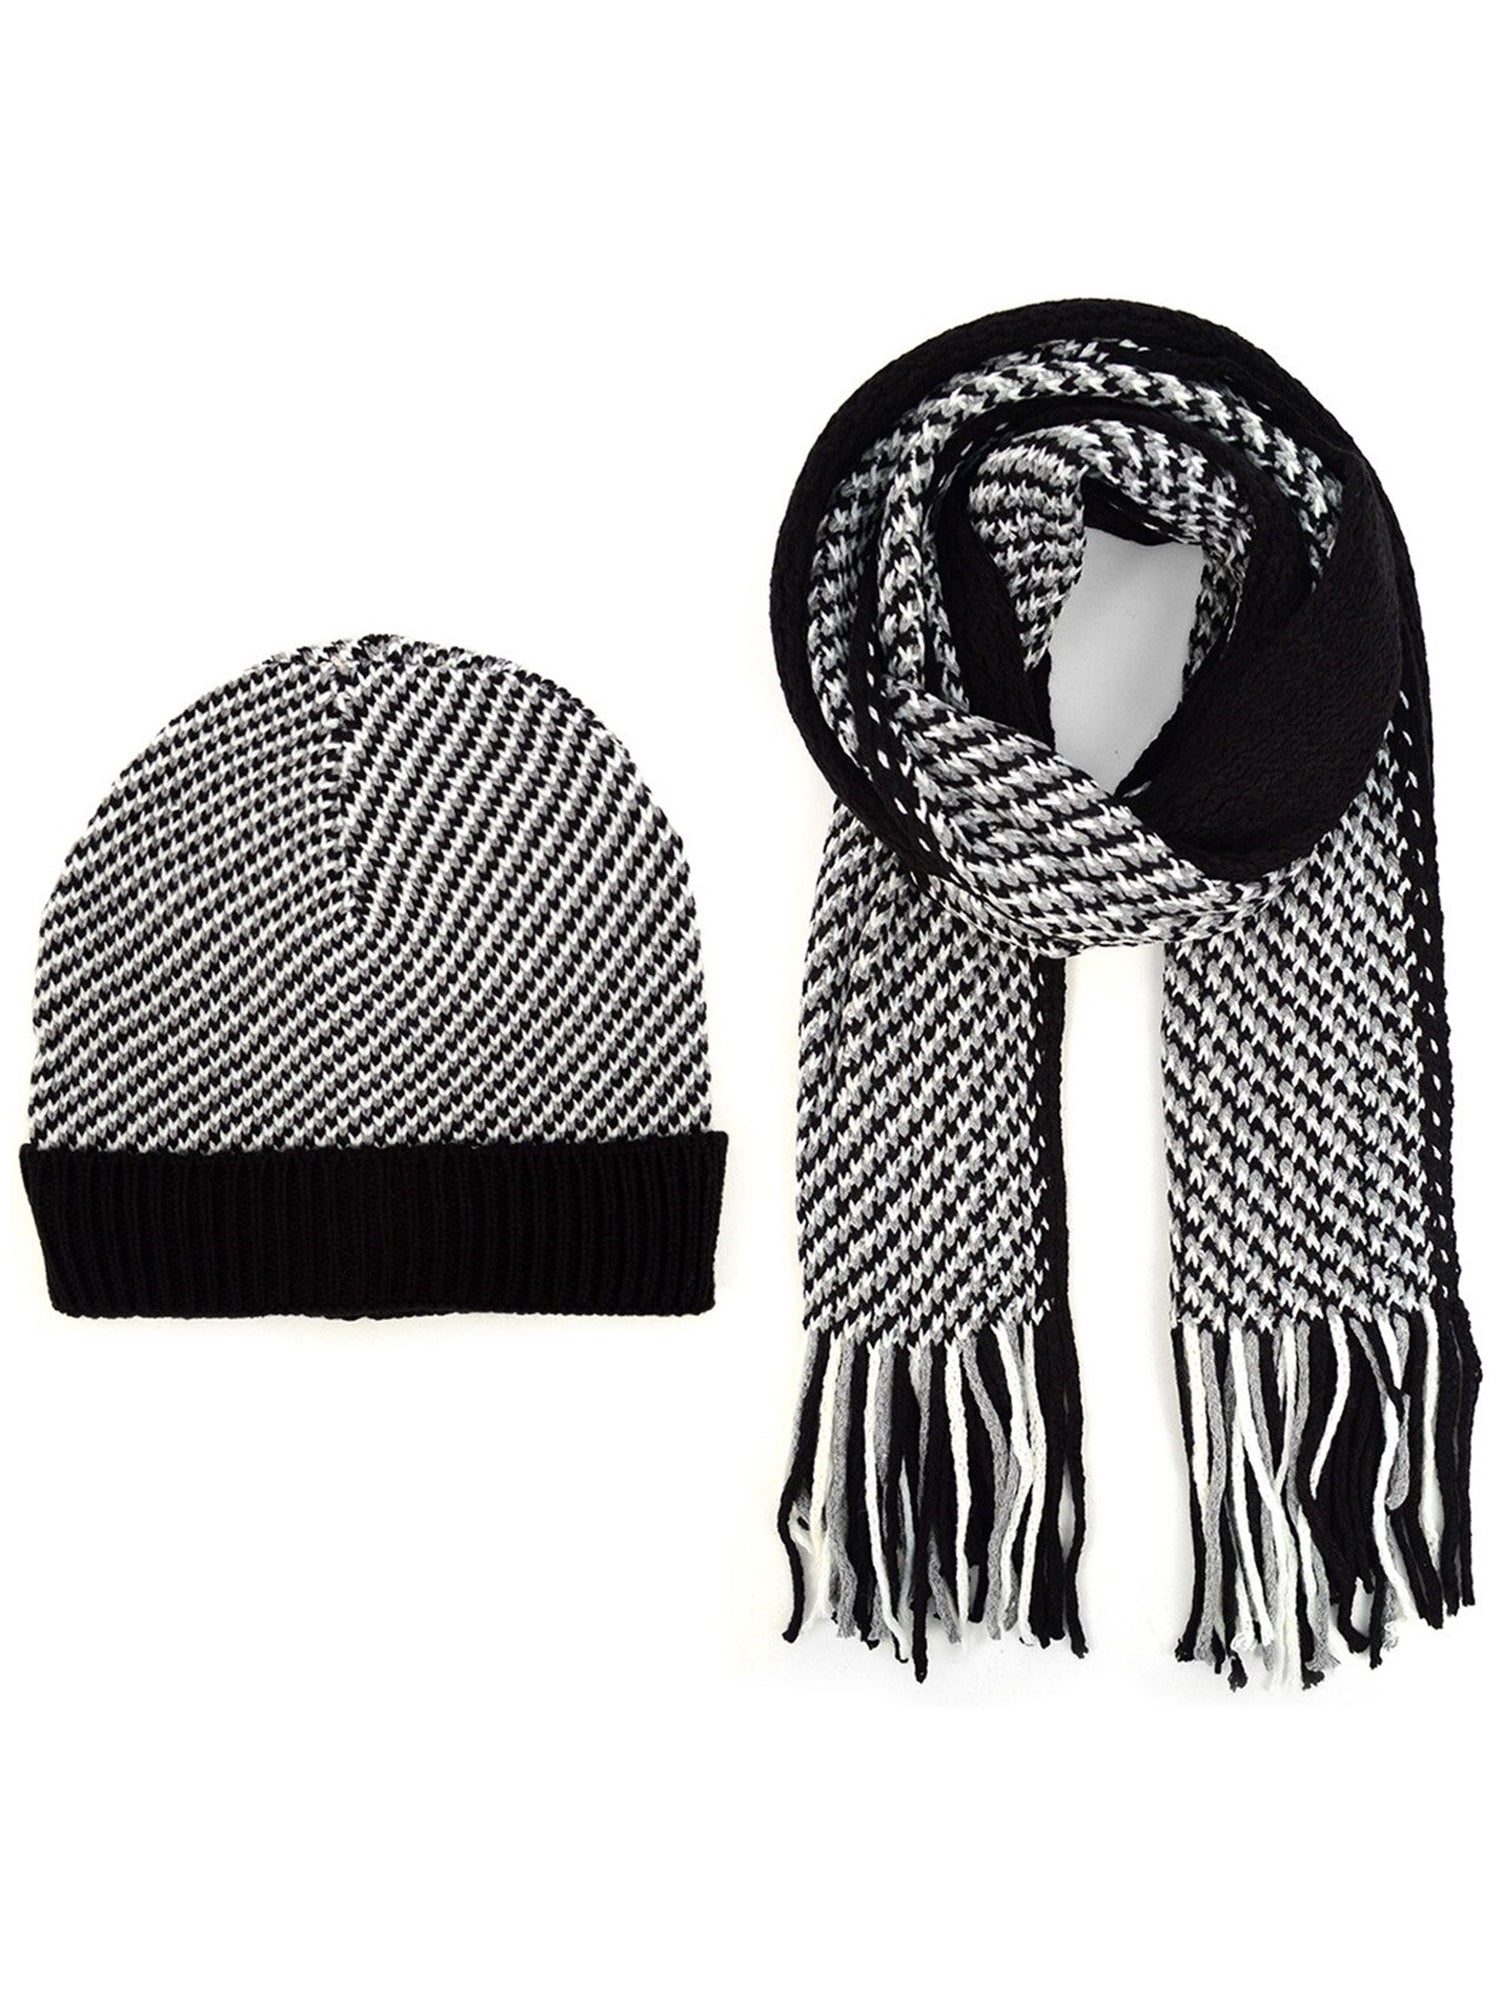 Men's Black, Grey & White Acrylic Knit Scarf and Hat Set Winter Set Umo Lorenzo Black One Size 